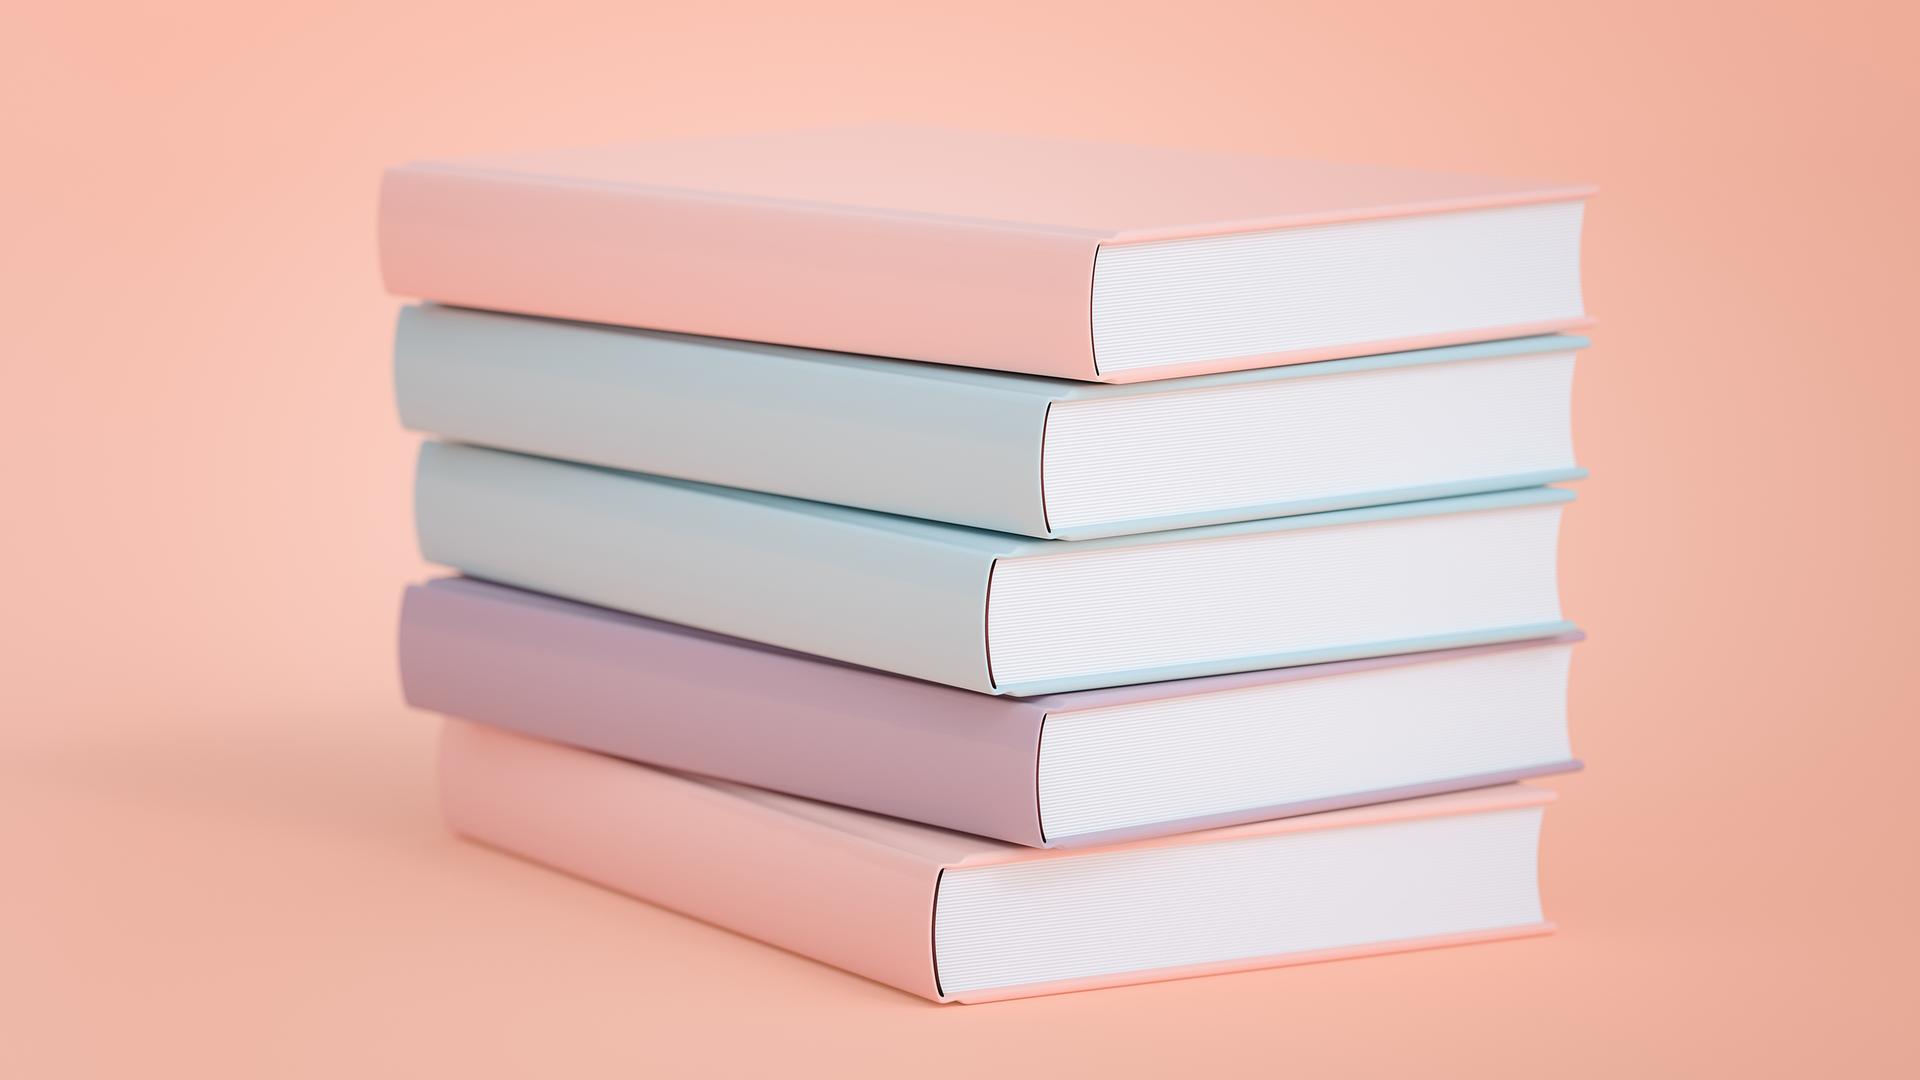 Pastellige gleichförmige Bücher auf einem Stapel.